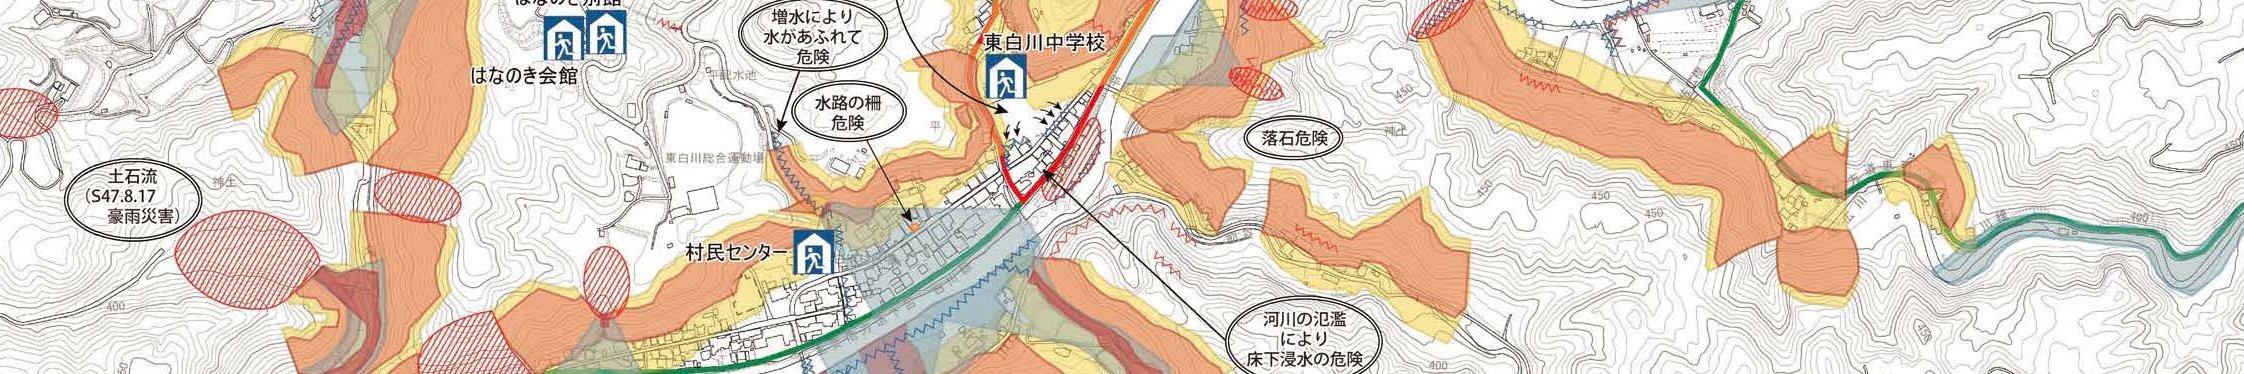 東白川村ハザードマップ(写真:ハザードマップの一部)